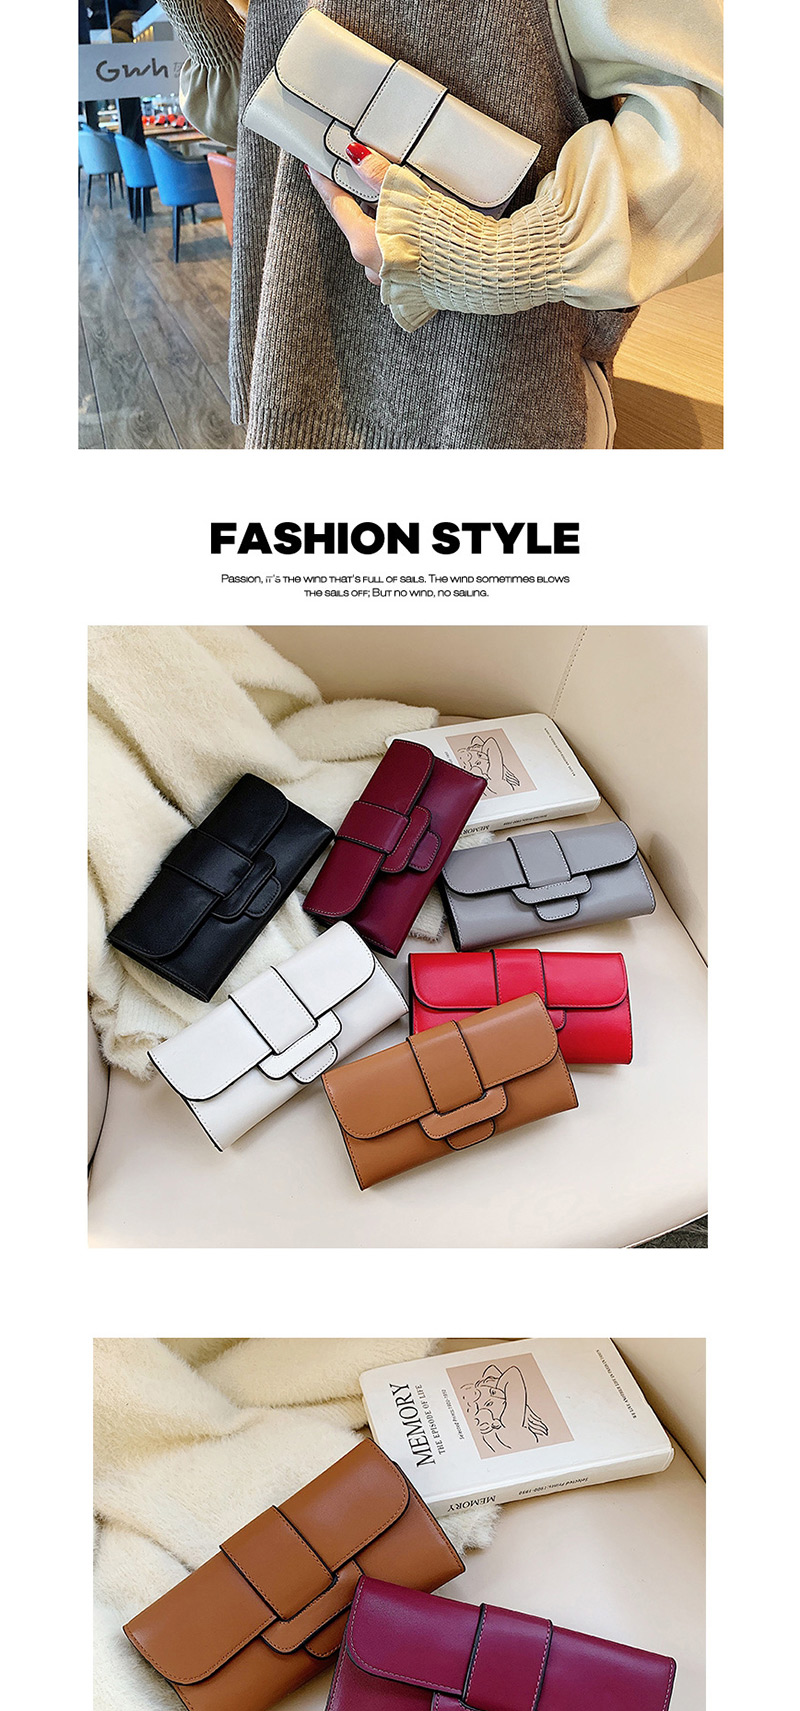 Fashion Black 3 Fold Long Belt Buckle Oil Side Change Clip 2 Piece Set,Wallet